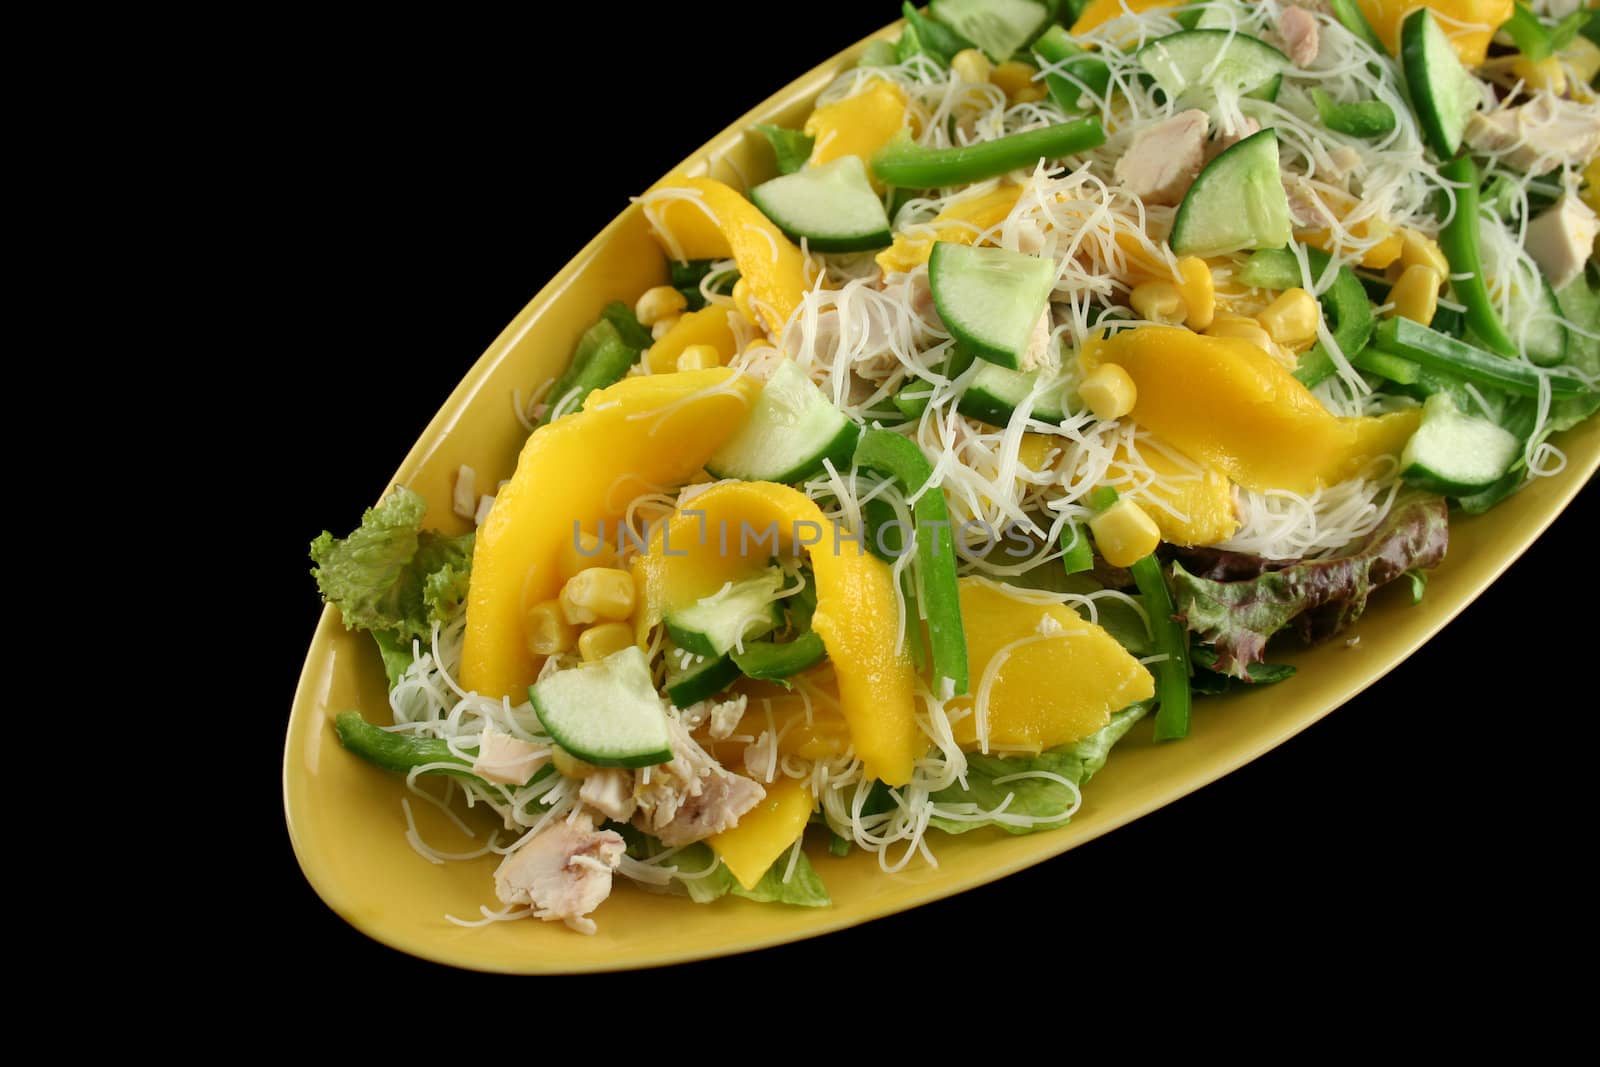 Chicken And Mango Salad 1 by jabiru